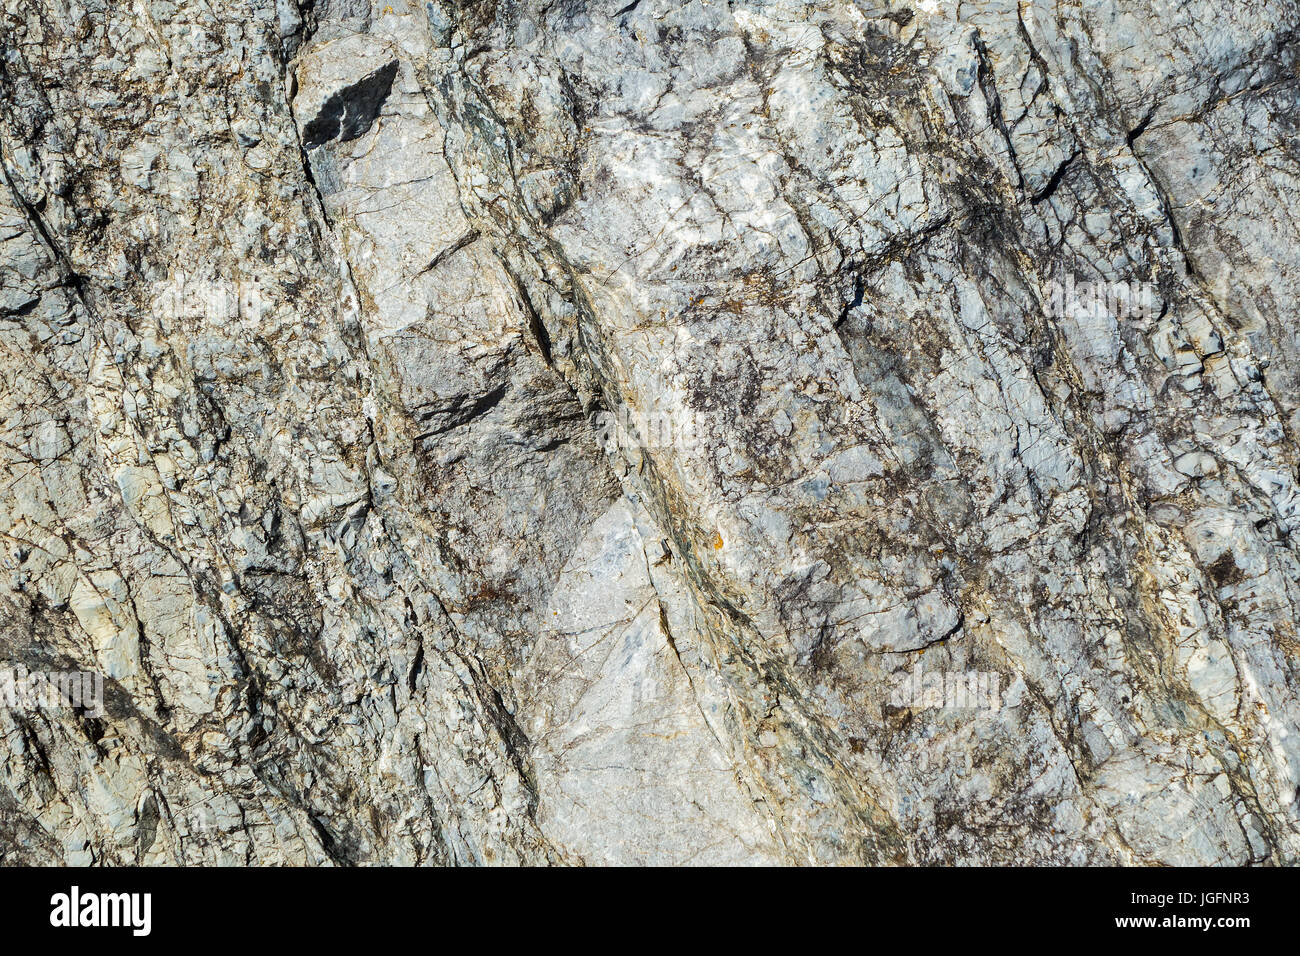 La caliza, roca sedimentaria compuesta de organismos marinos, cerca mostrando la estructura y textura de grano Foto de stock